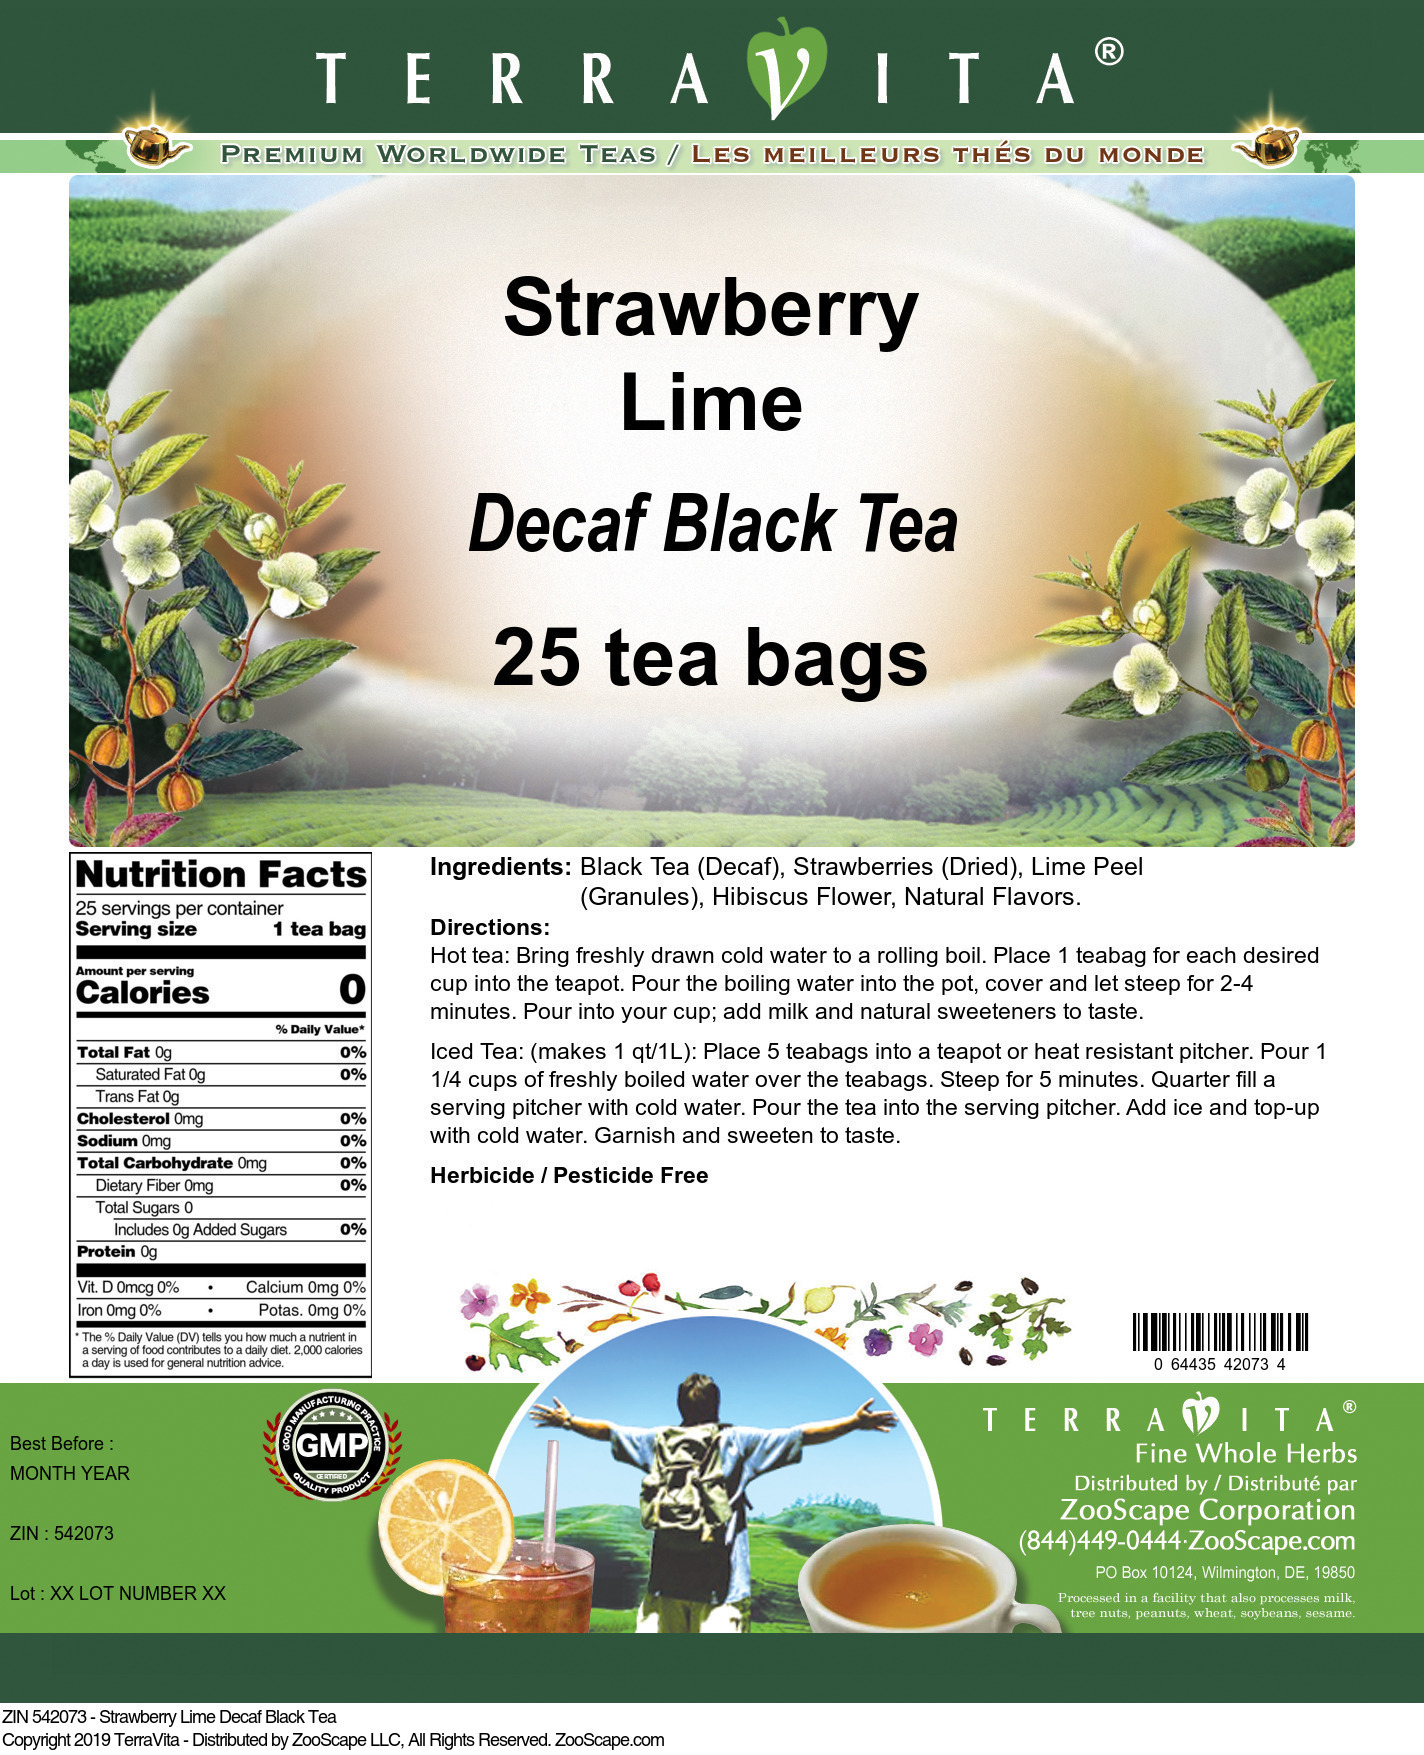 Strawberry Lime Decaf Black Tea - Label